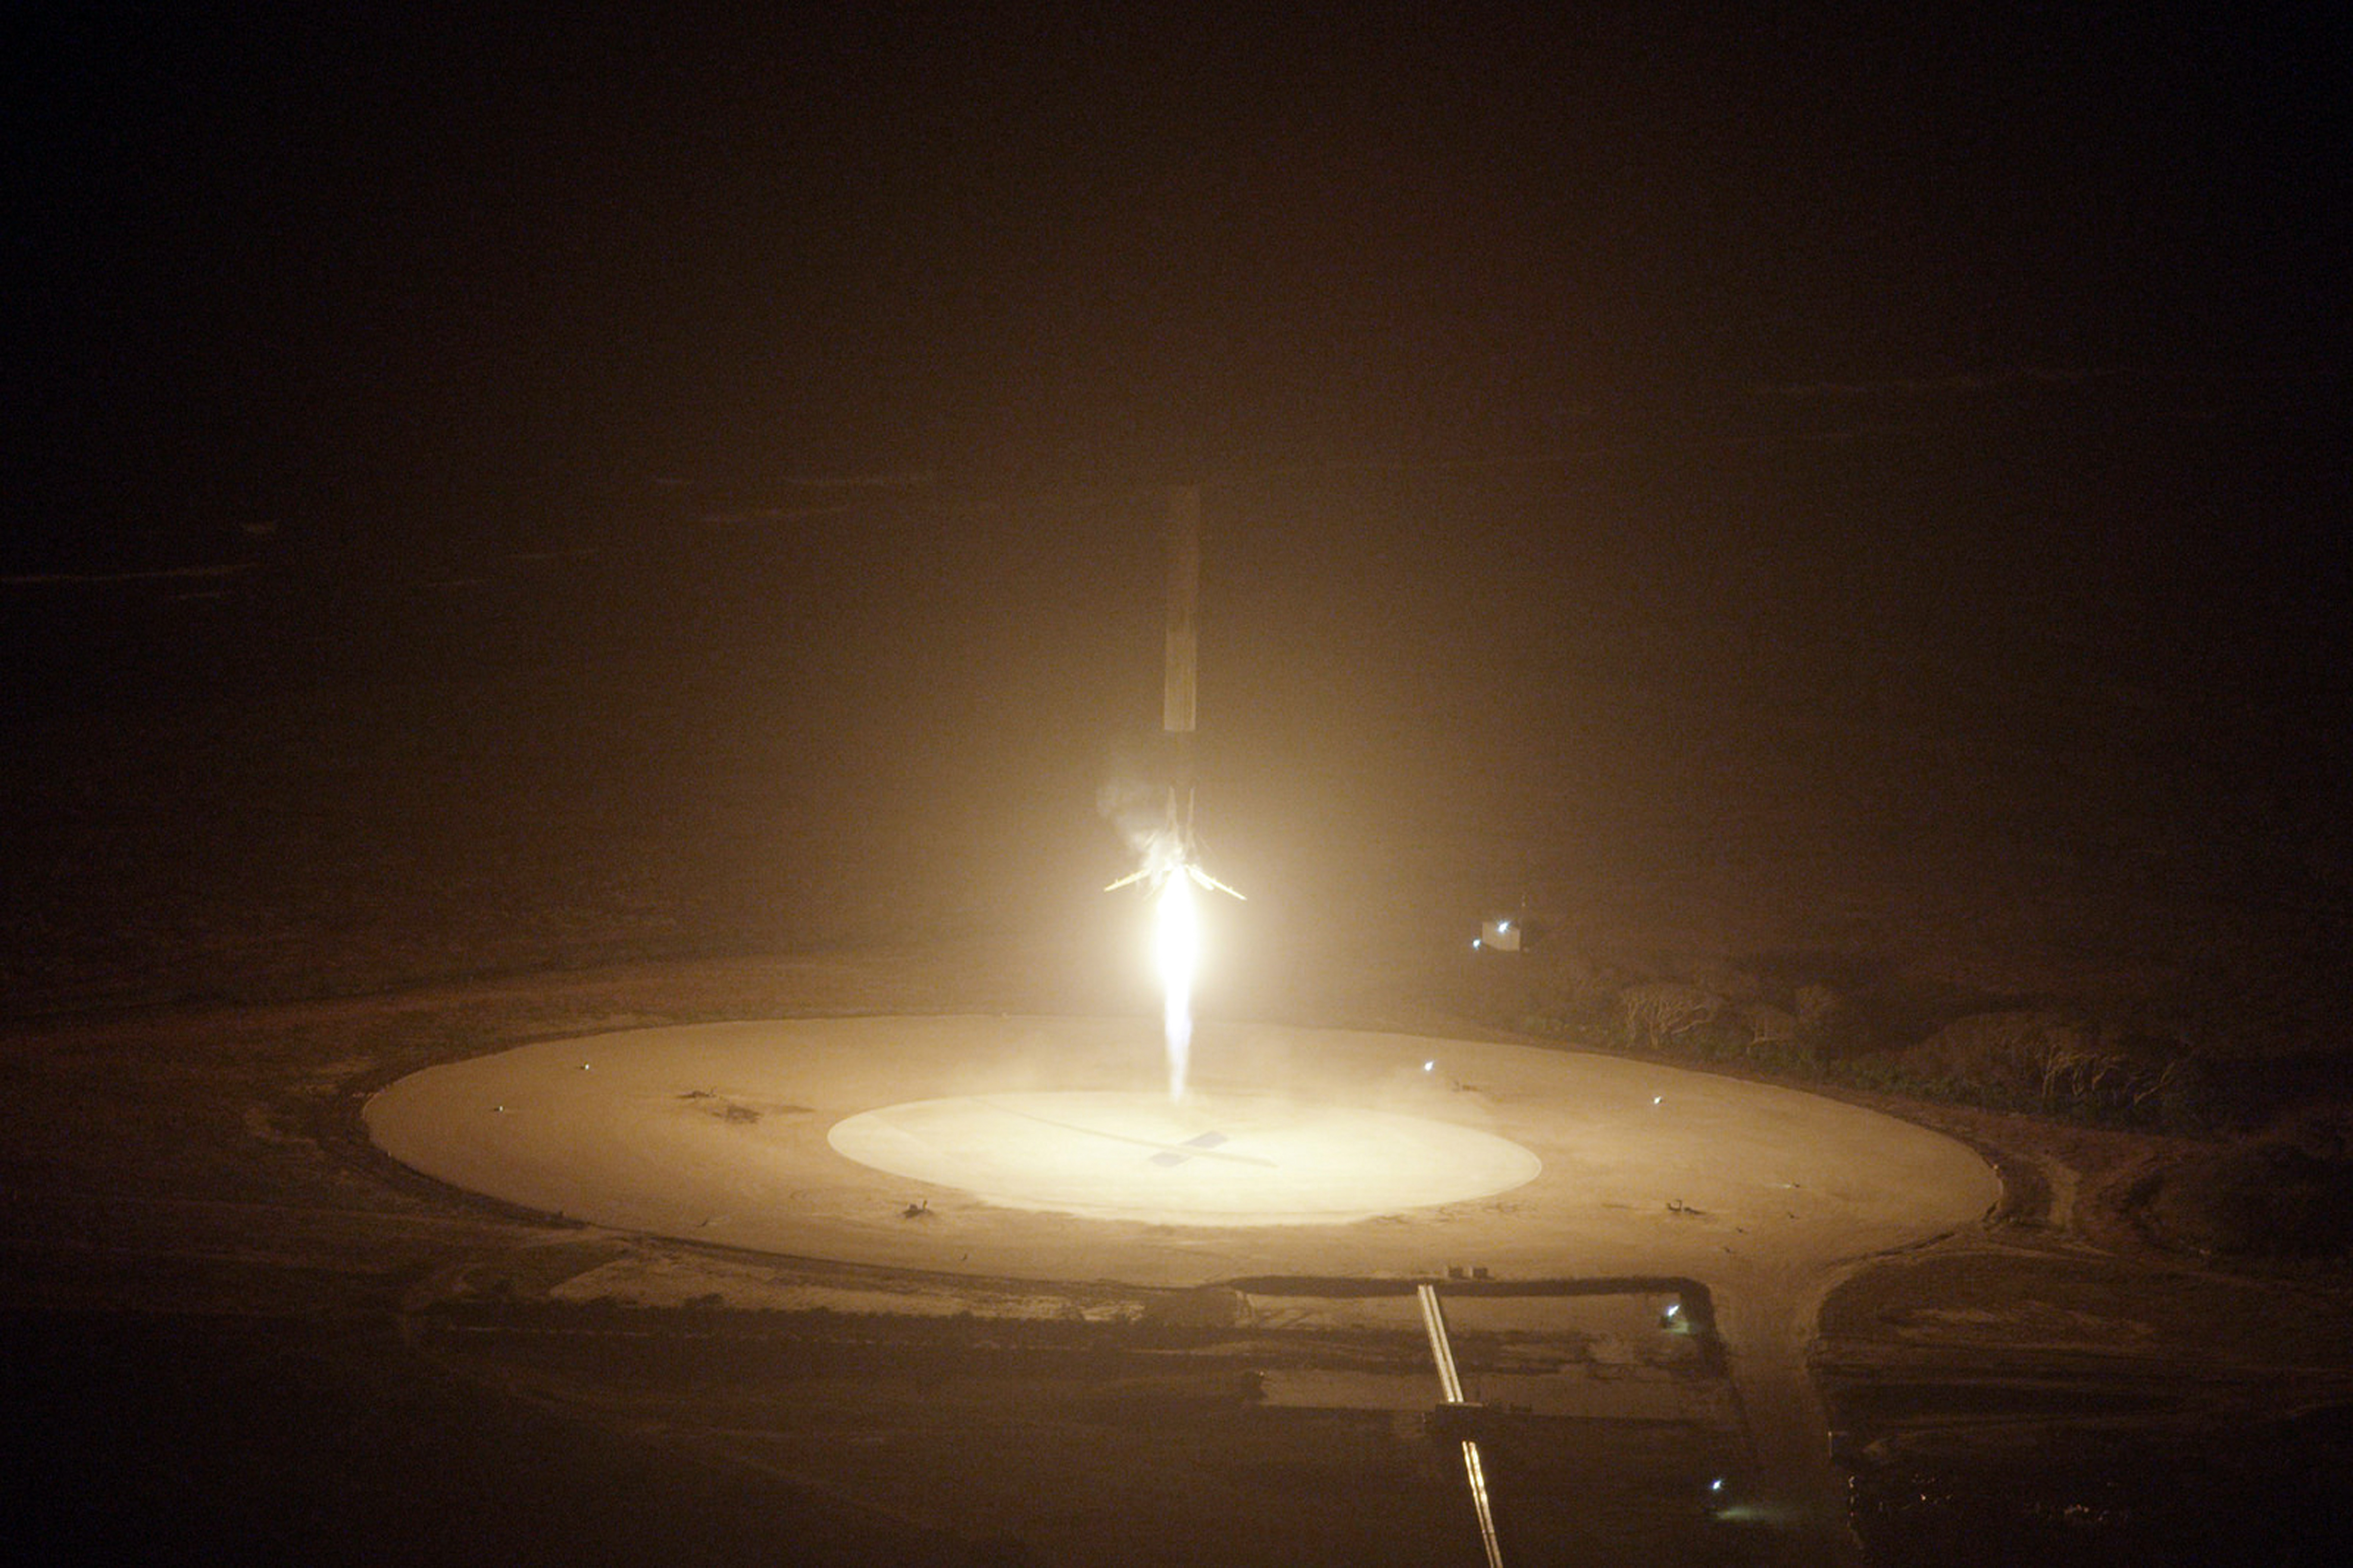 A Falcon 9 rakéta vertikális landolásában rengetegen kételkedtek, de 2015 decemberében sikeresen hajtották végre